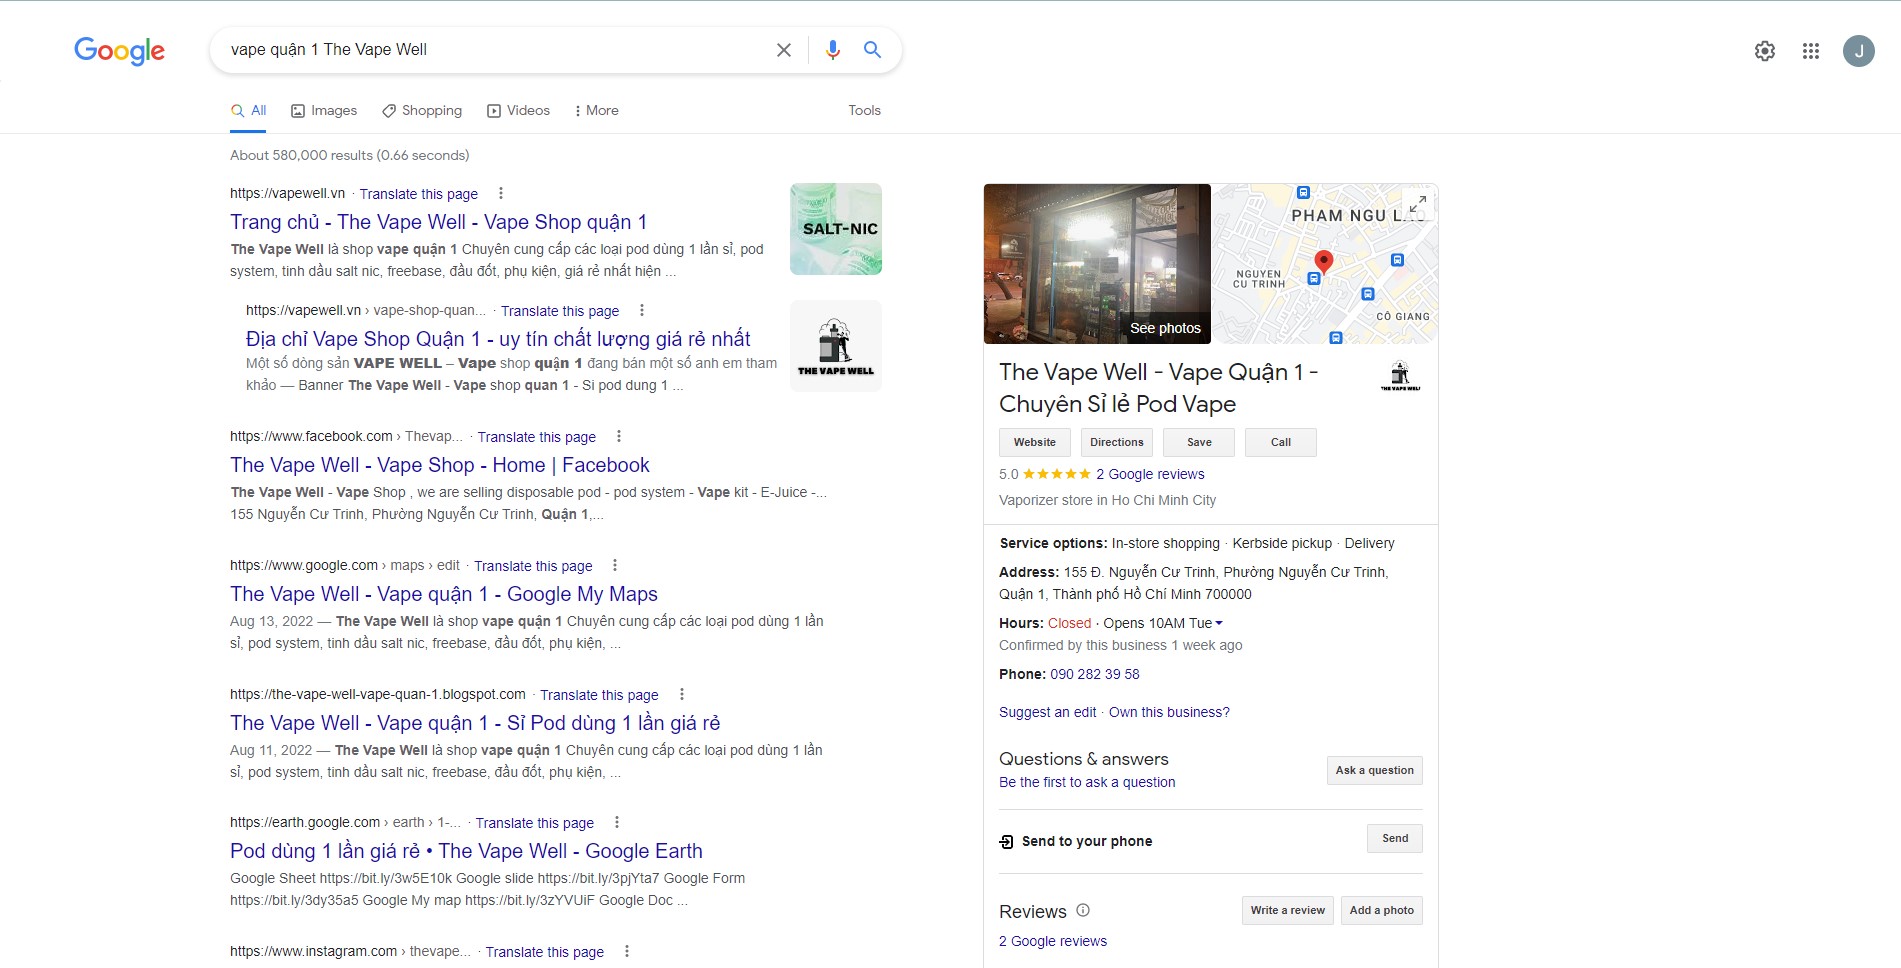 Hướng dẫn tìm kiếm trên google về The Vape Well tiệm Vape Gần bạn nhất TPHCM